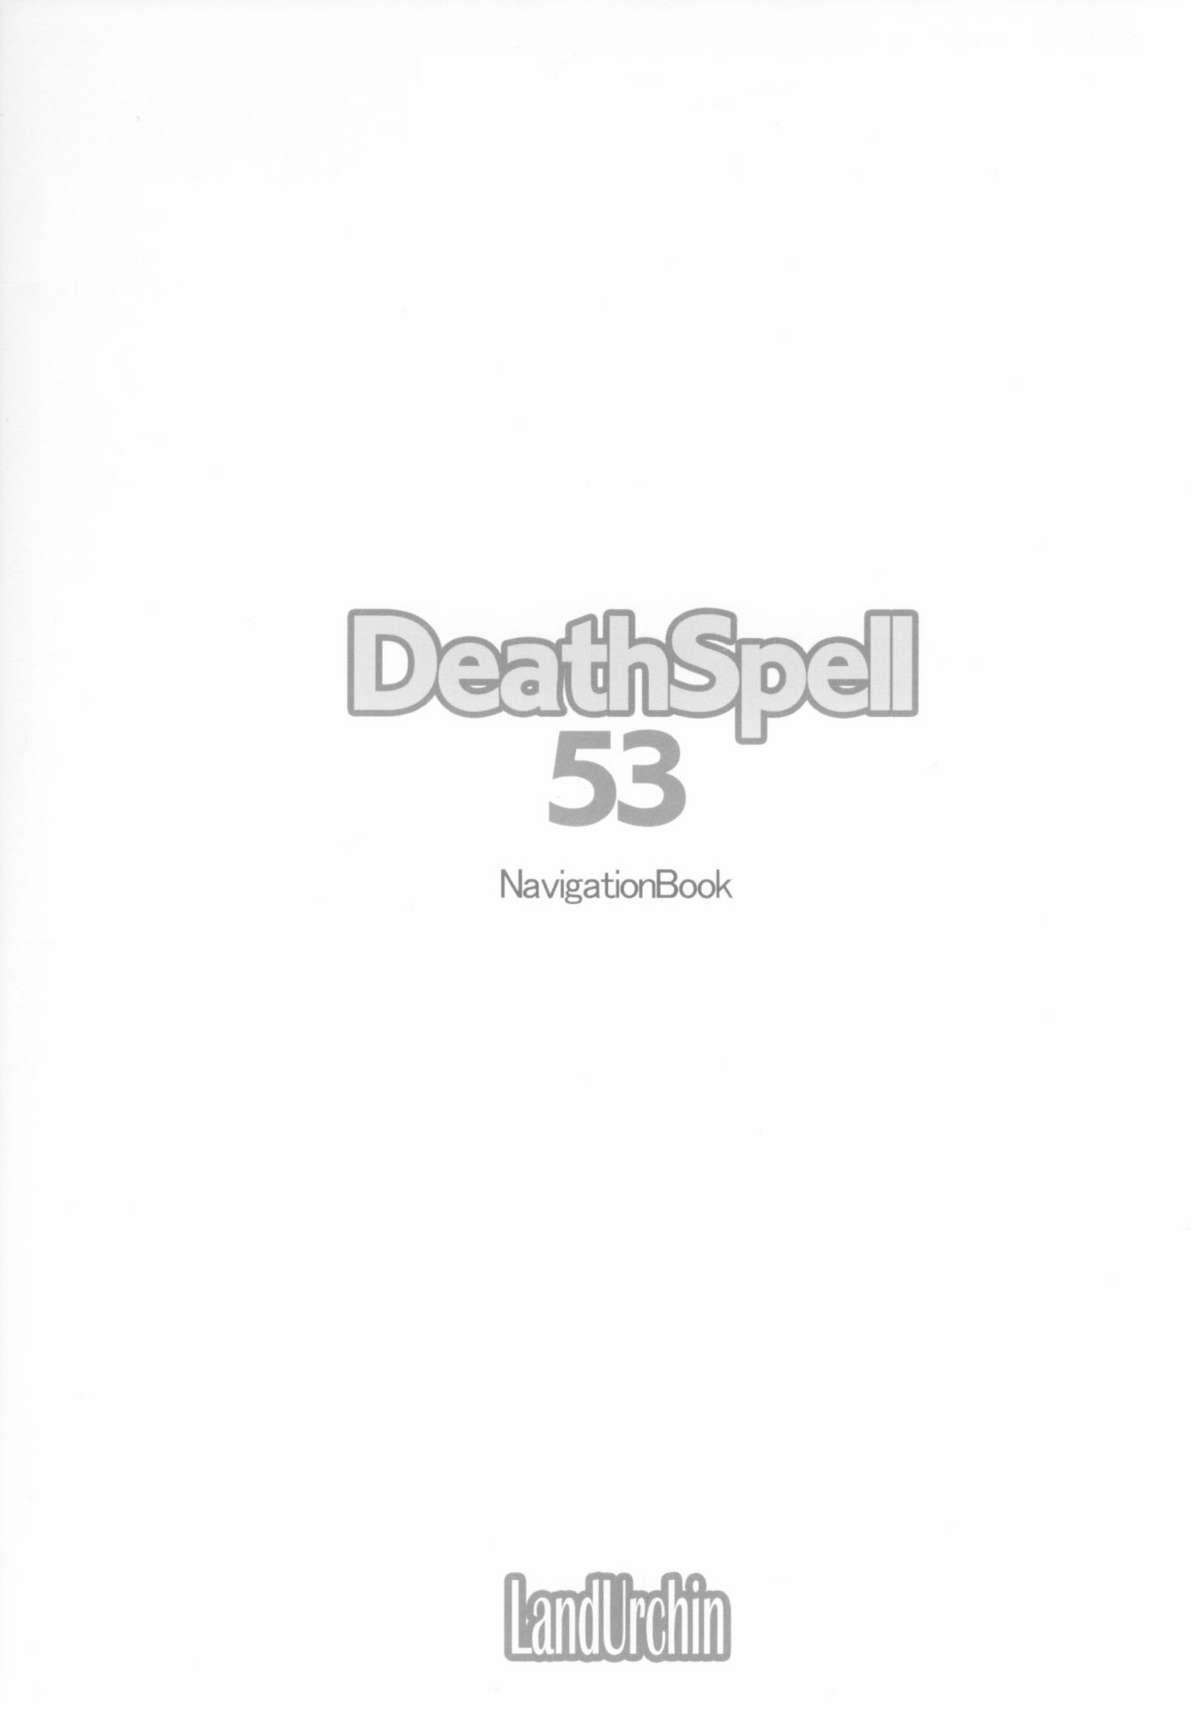 DeathSpell 53 NavigationBook 1